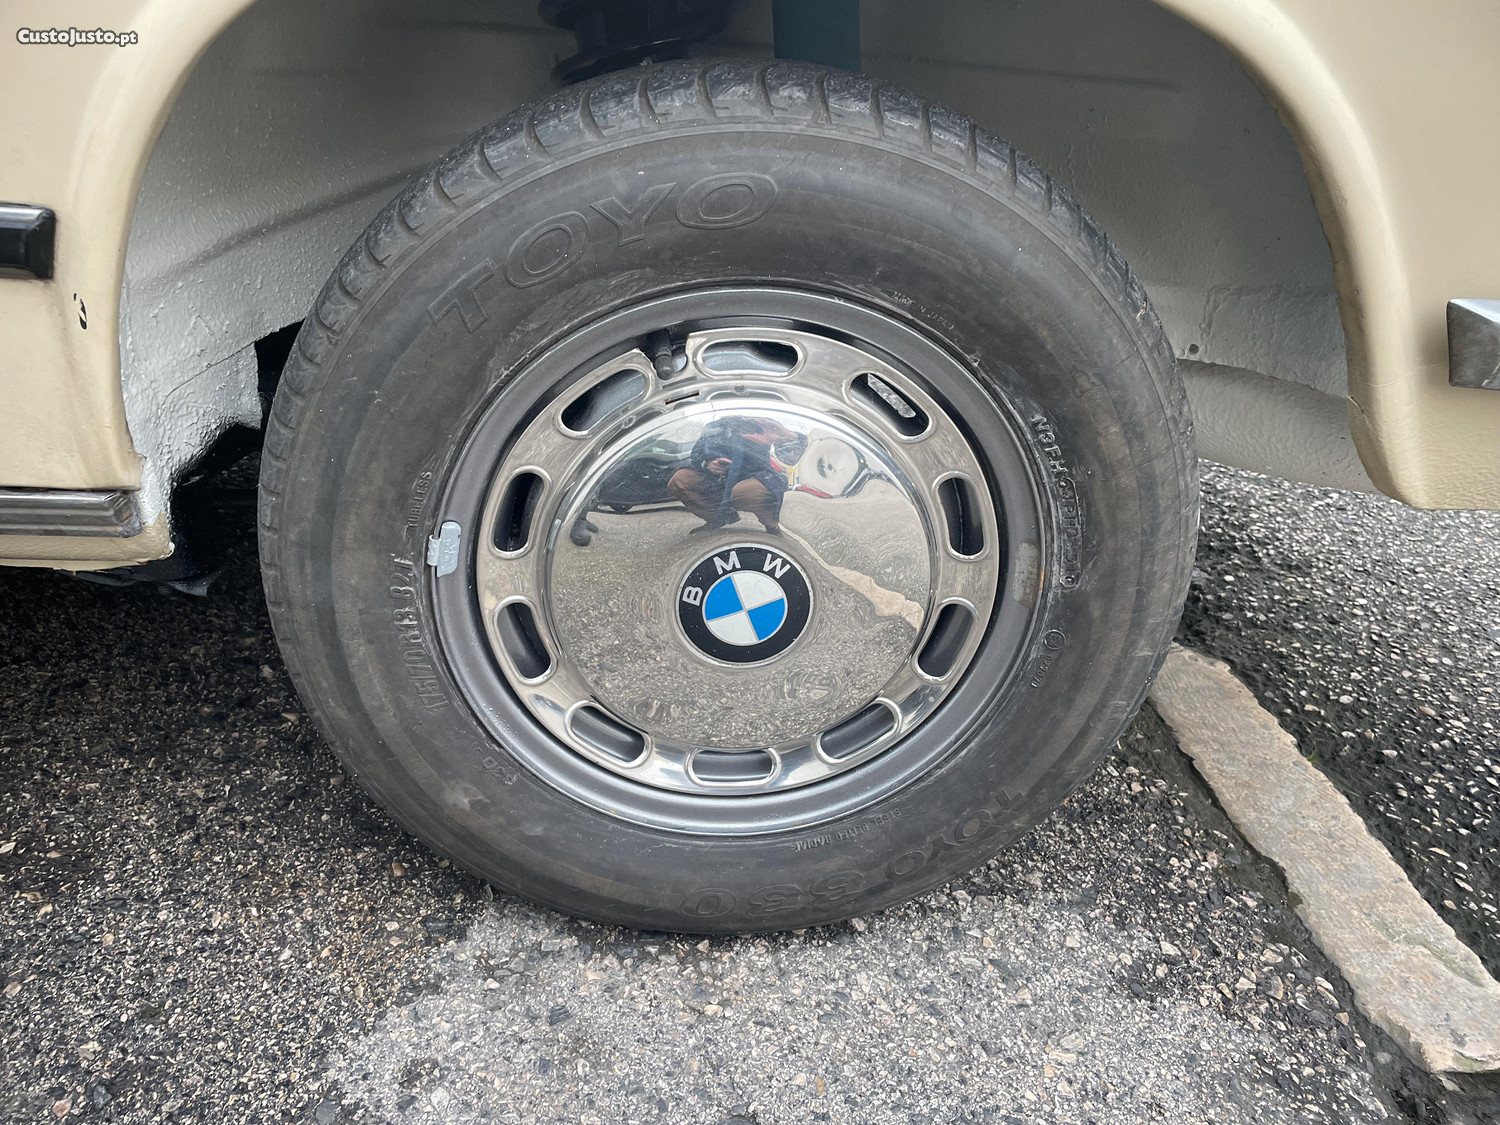 BMW 2002 Coupe (faróis redondos) restauro total